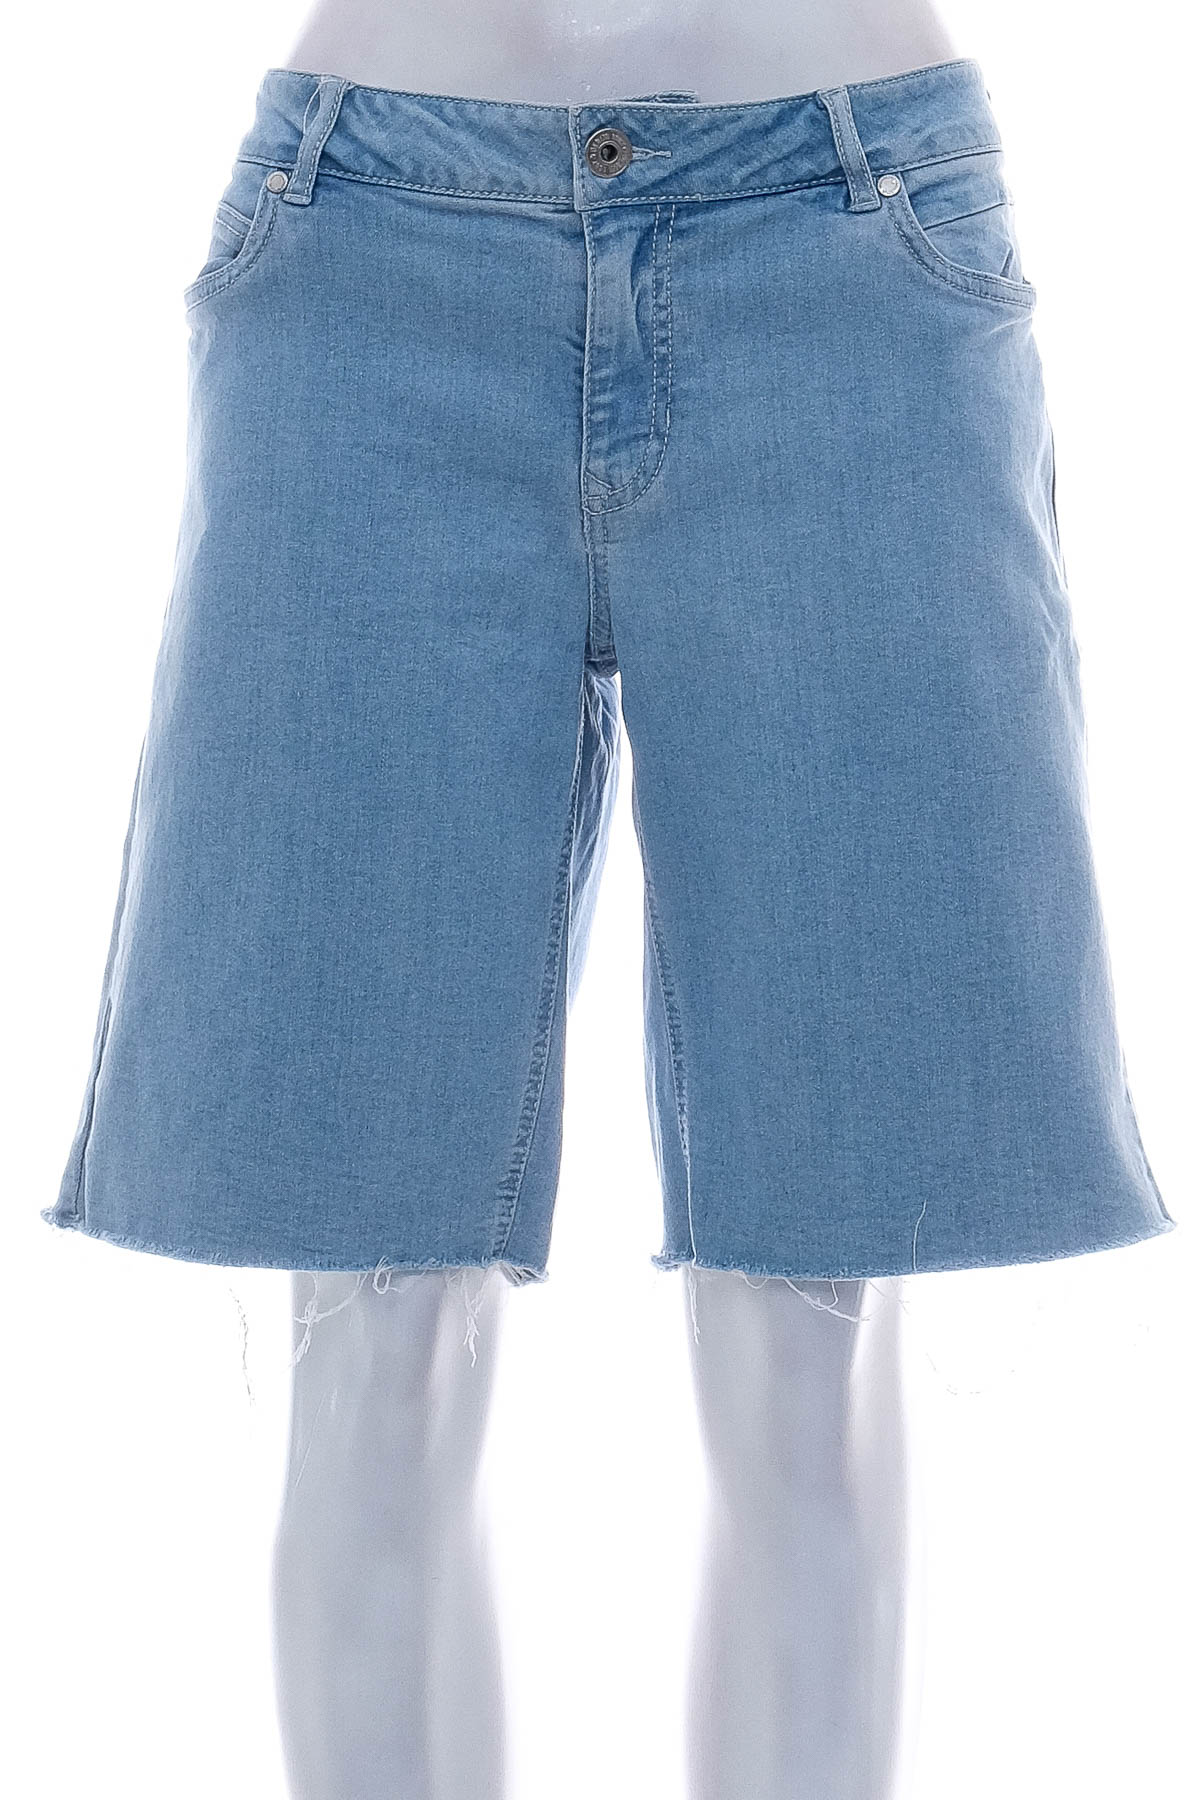 Γυναικείο κοντό παντελόνι - Denim 1982 - 0